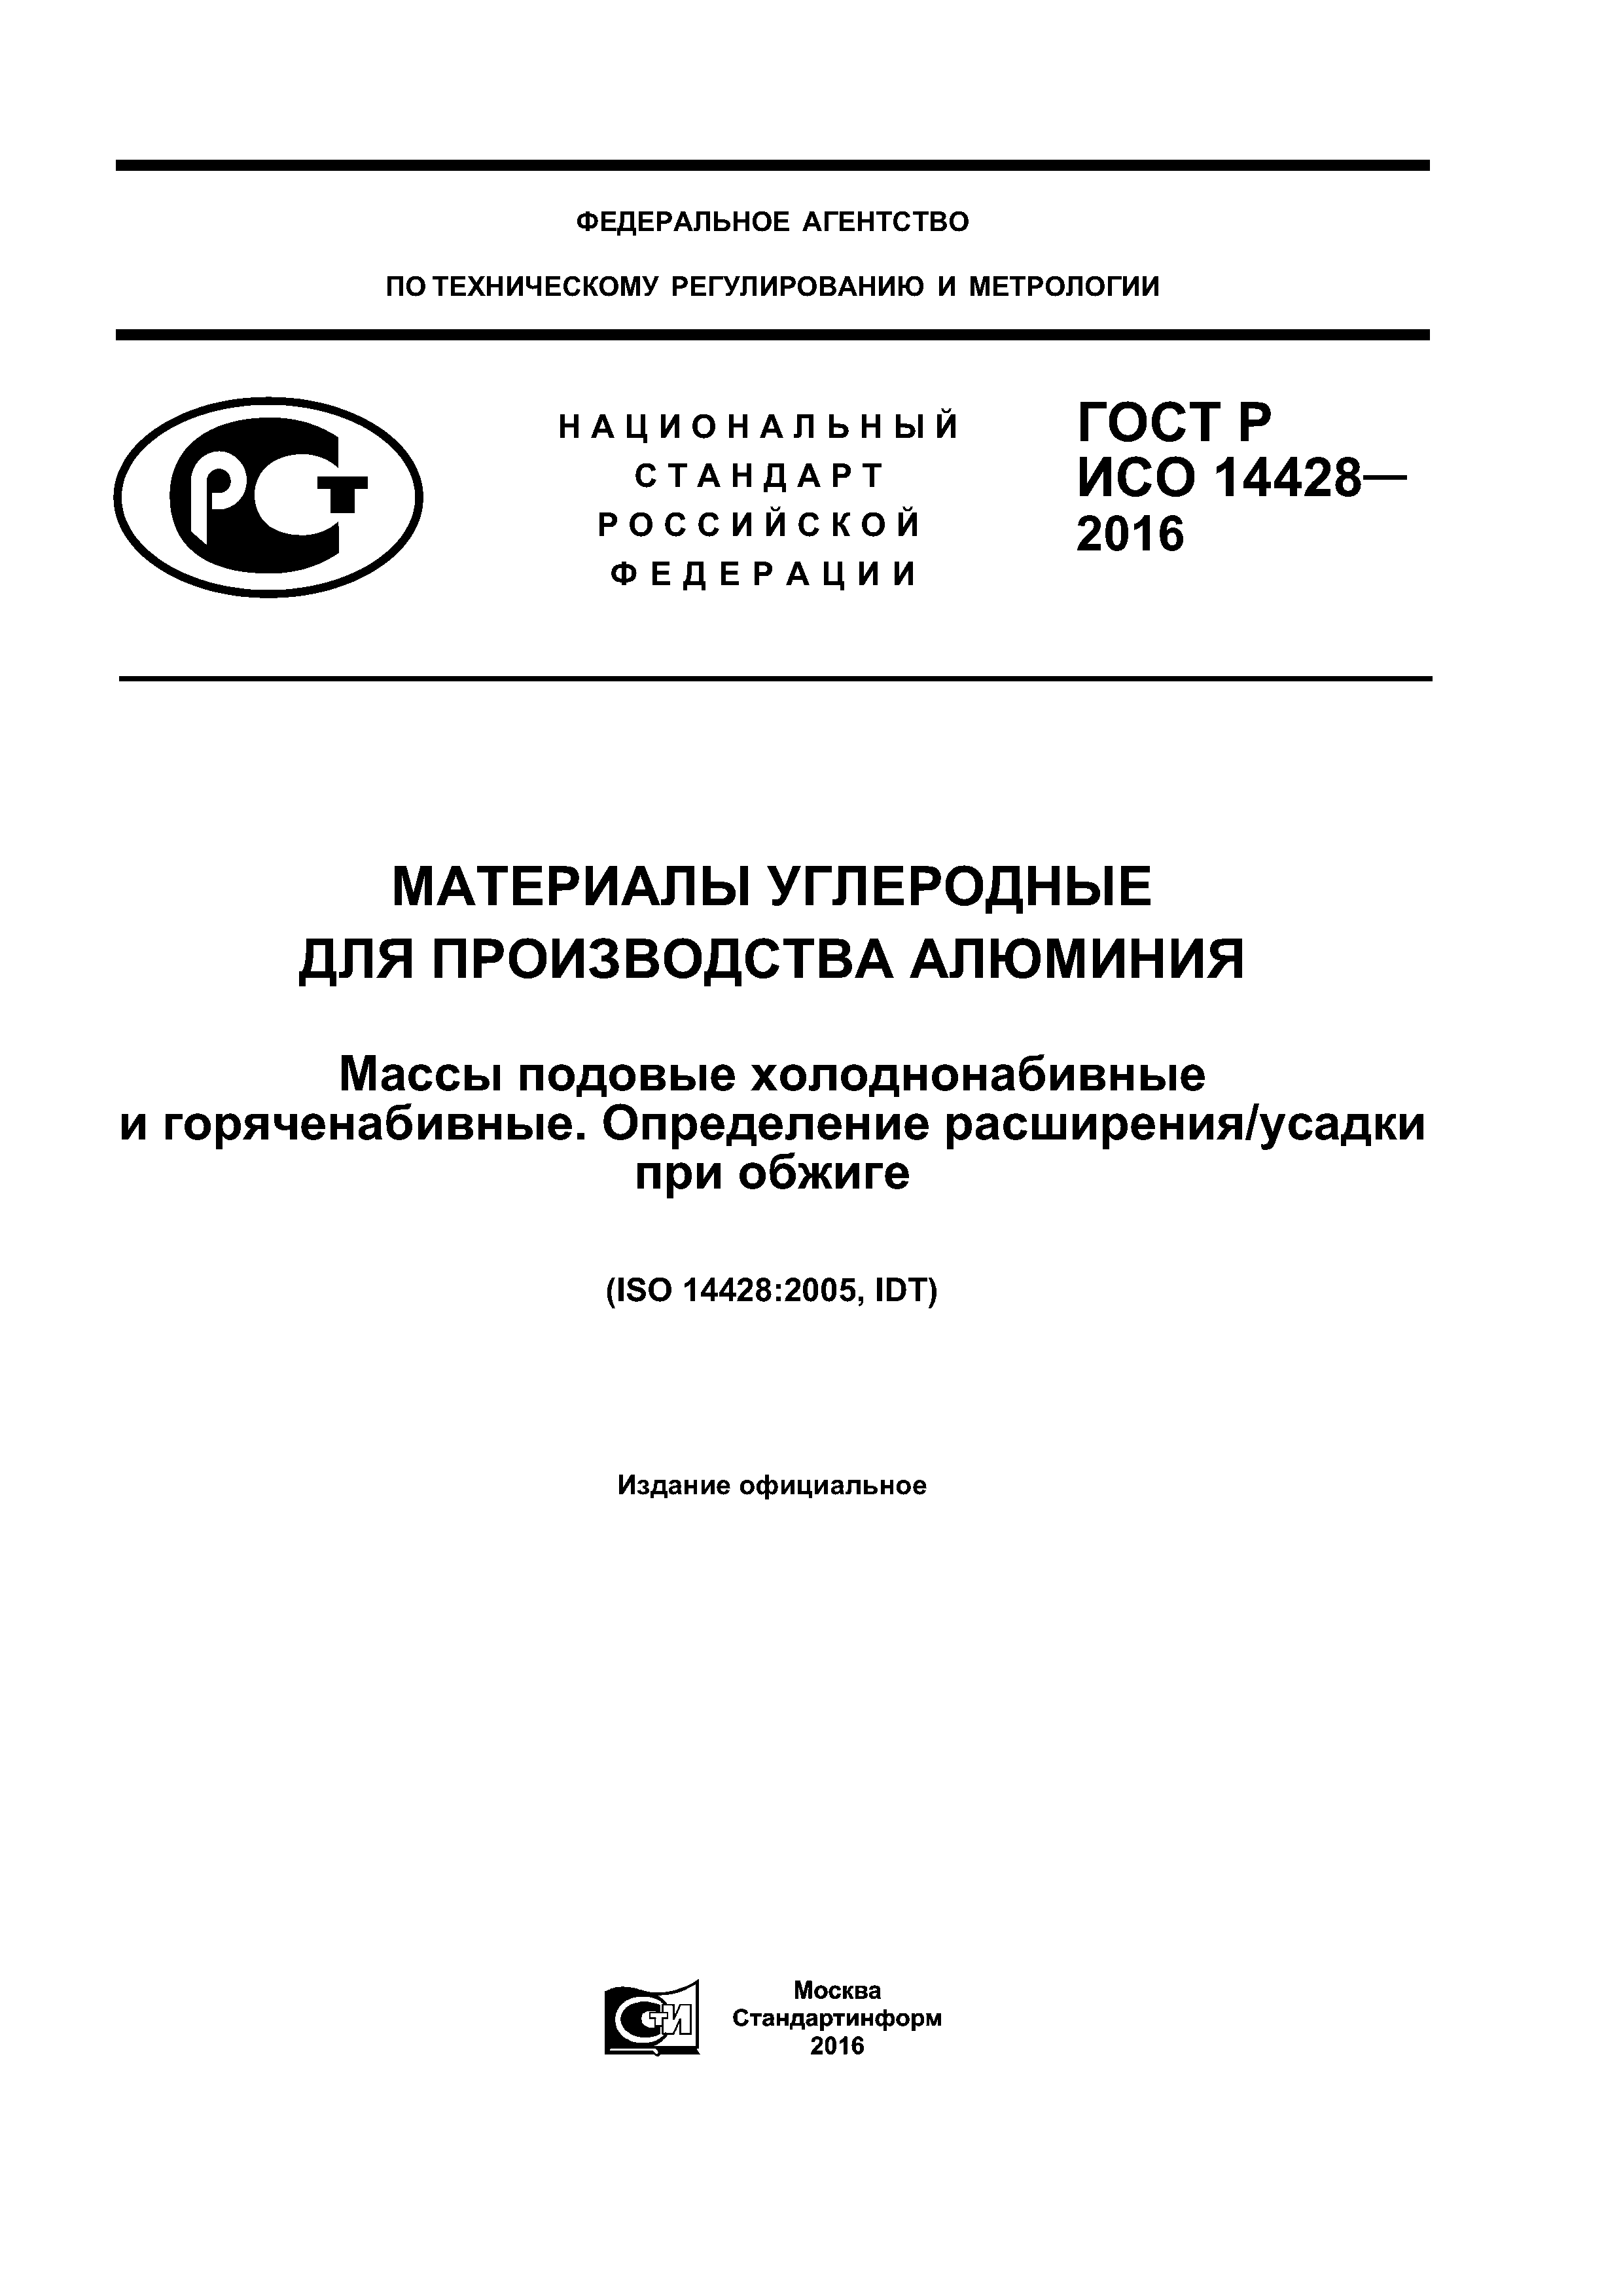 ГОСТ Р ИСО 14428-2016